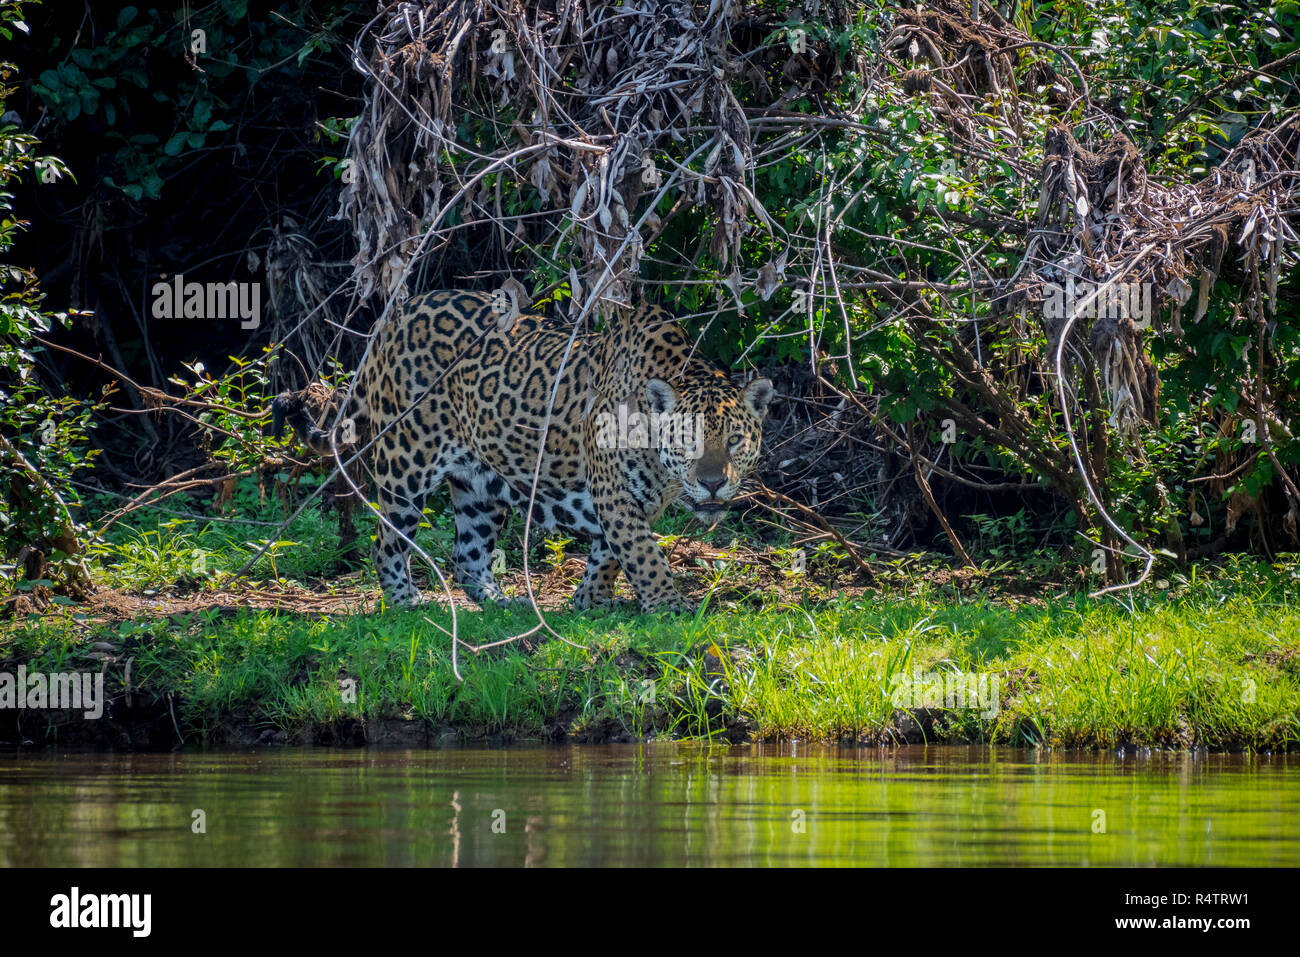 Jaguar (Panthera onca) at shore, shore vegetation, Barranco Alto, Pantanal, Mato Grosso do Sul, Brazil Stock Photo